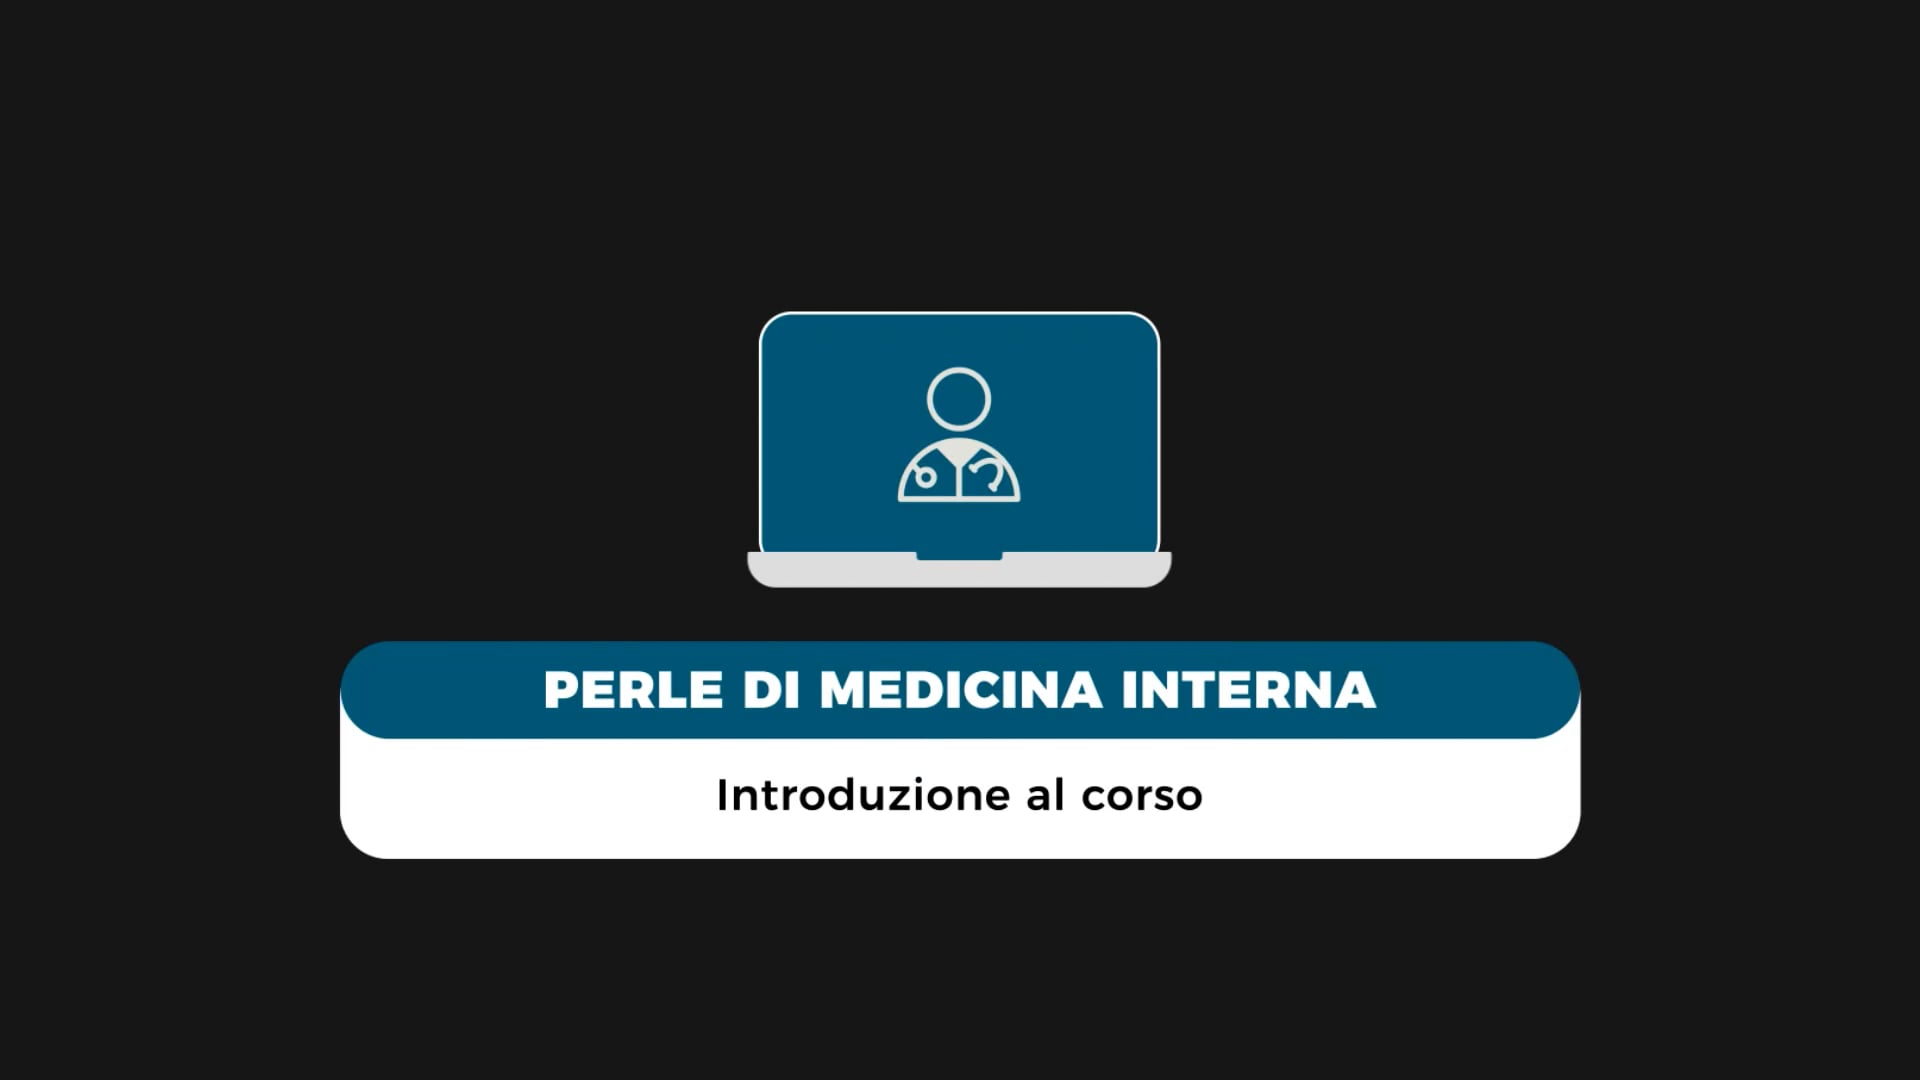 PerlediMedicinaInterna-Lombardo-Intro